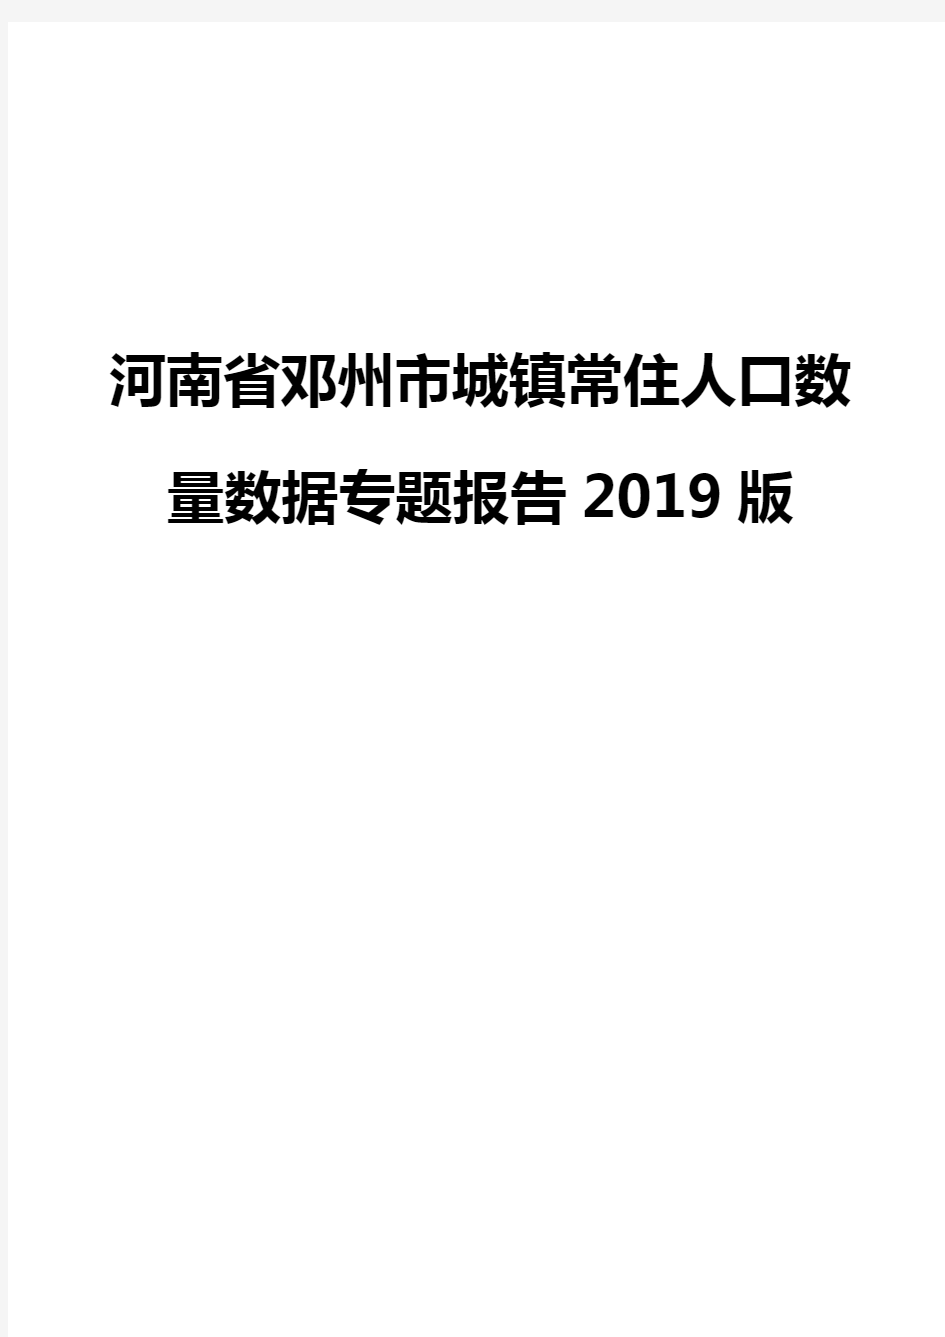 河南省邓州市城镇常住人口数量数据专题报告2019版